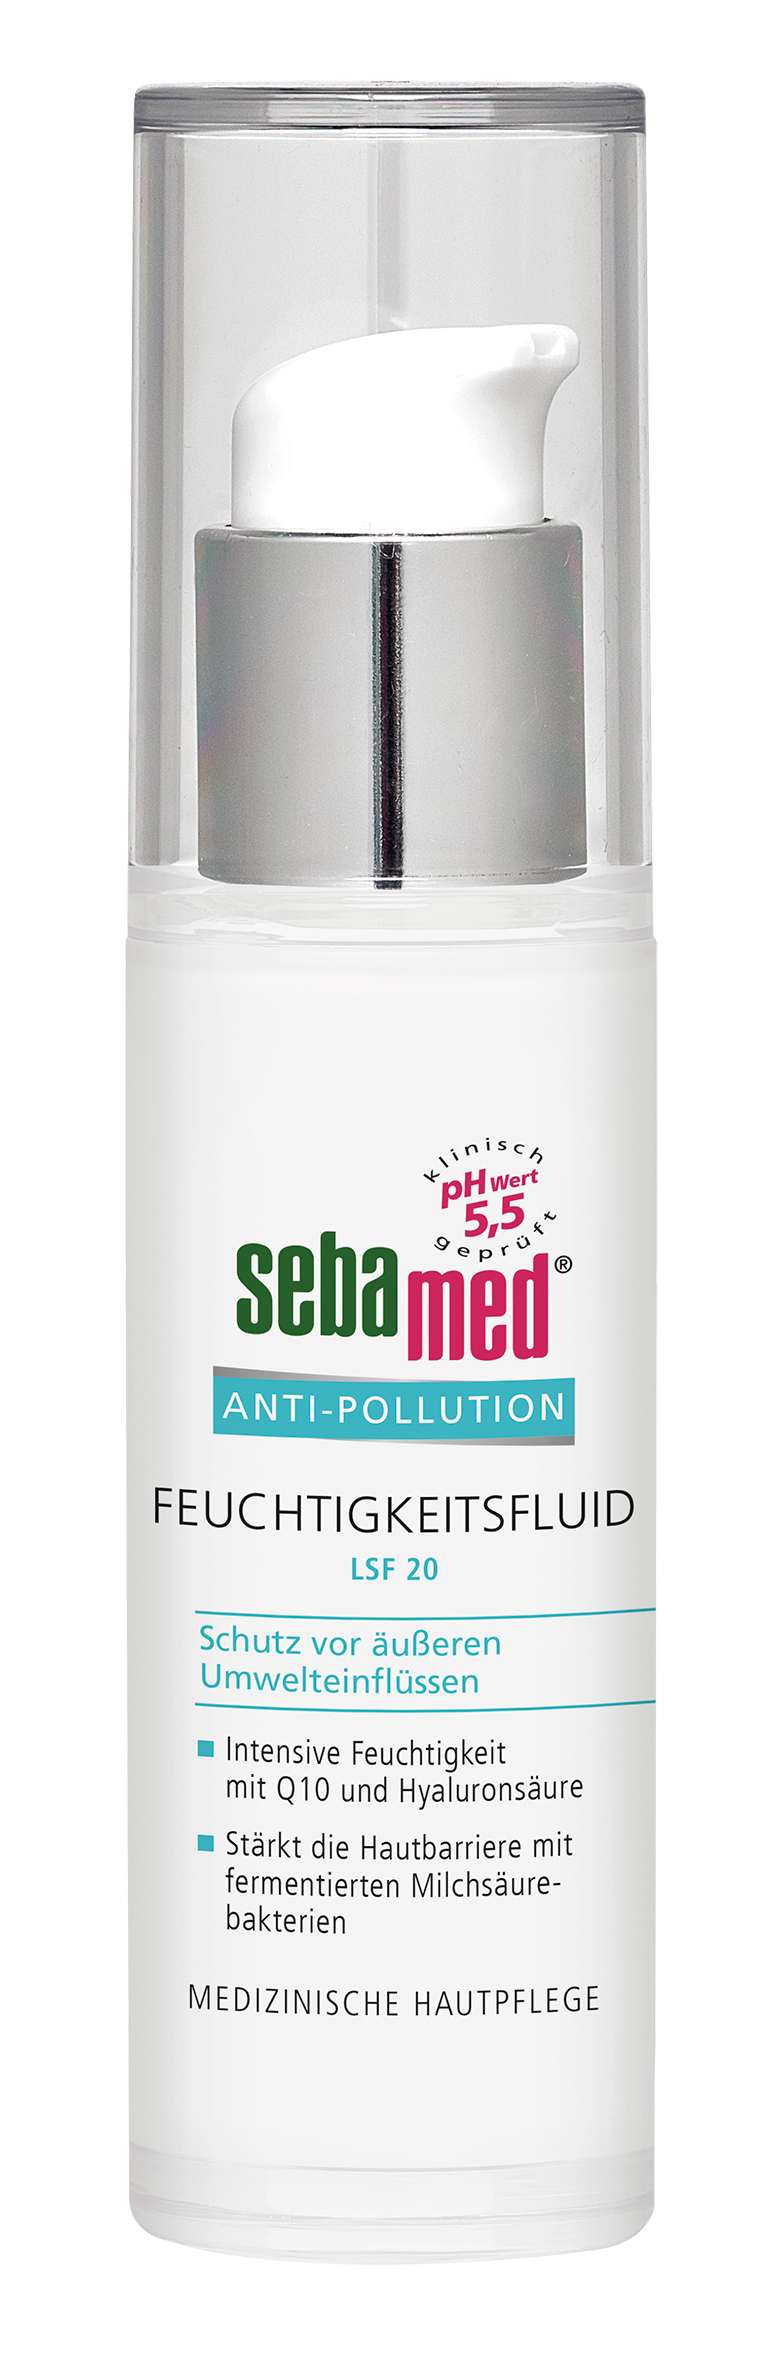 sebamed ANTI-POLLUTION Feuchtigkeitsfluid (30 ml): UVP 9,99 Euro